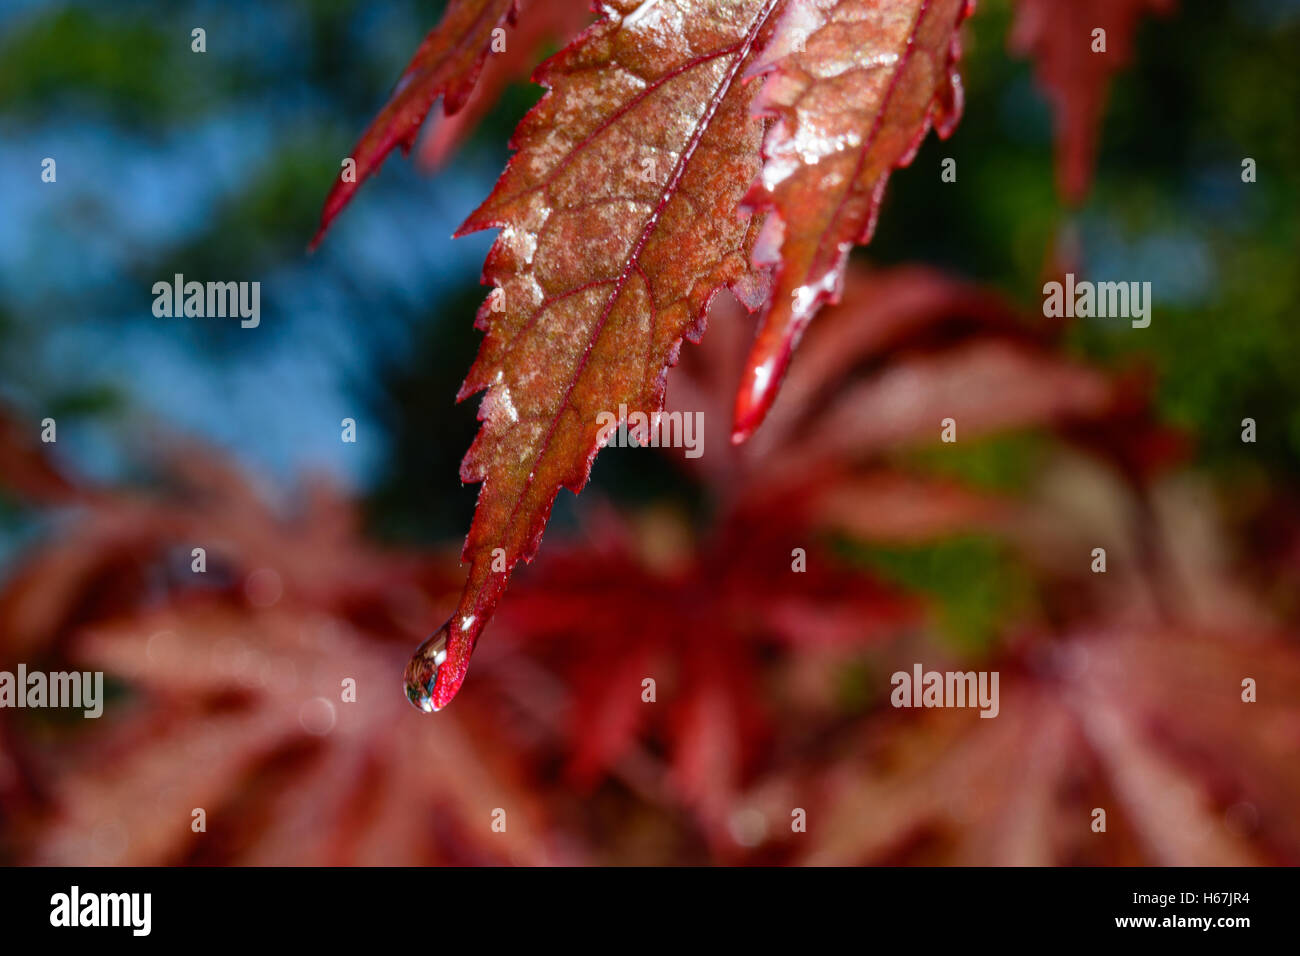 Selektiven Fokus auf dem Blatt einen japanischen Ahorn - Acer Palmatum - mit einem Regentropfen auf der Spitze des Blattes. Stockfoto